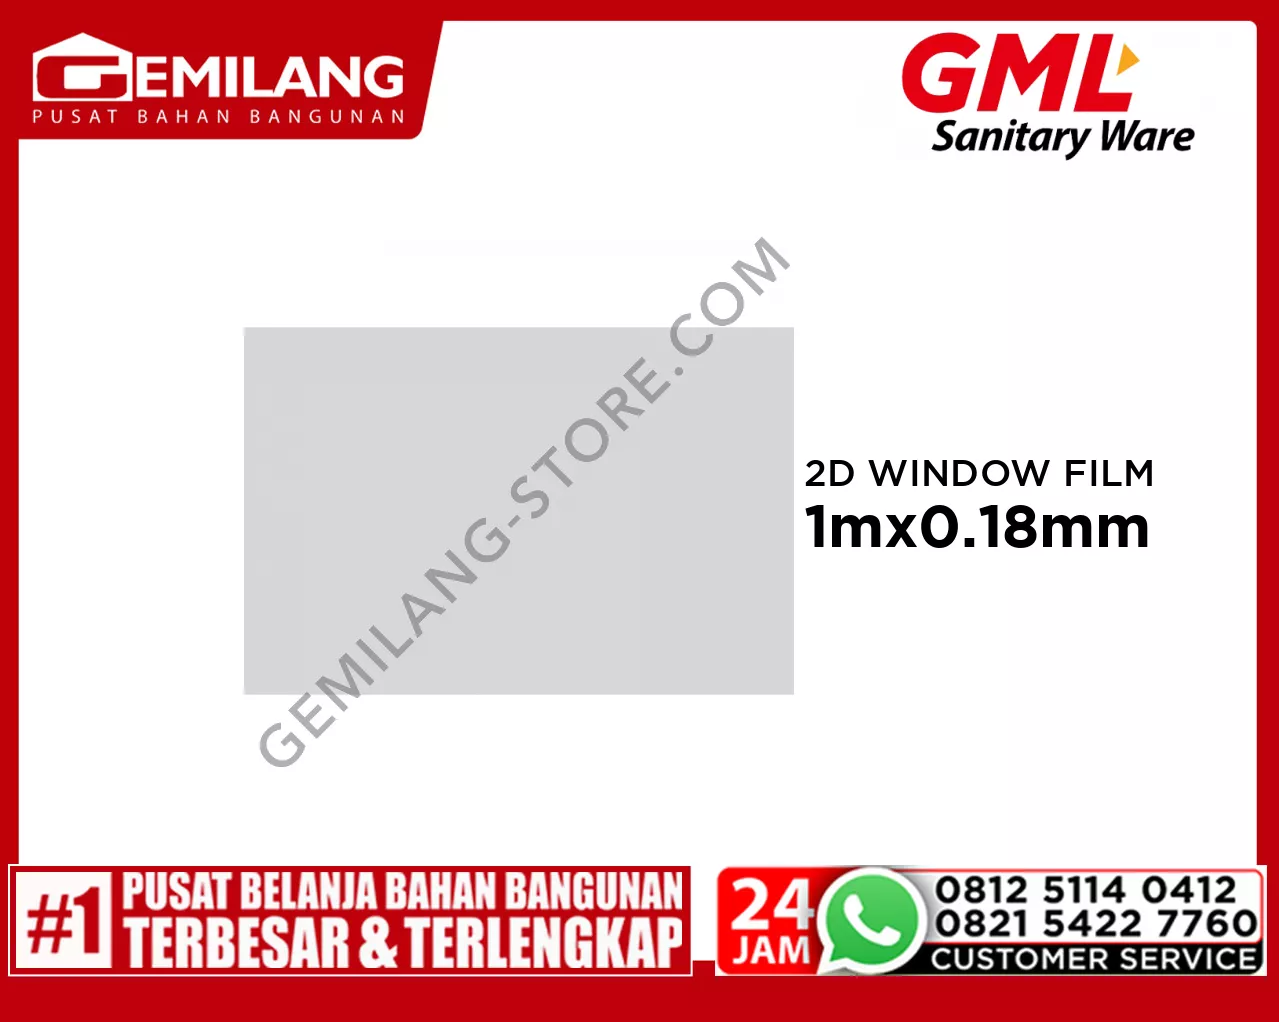 GML 2D STATIC WINDOW FILM 032 50 x 1m x 0.18mm